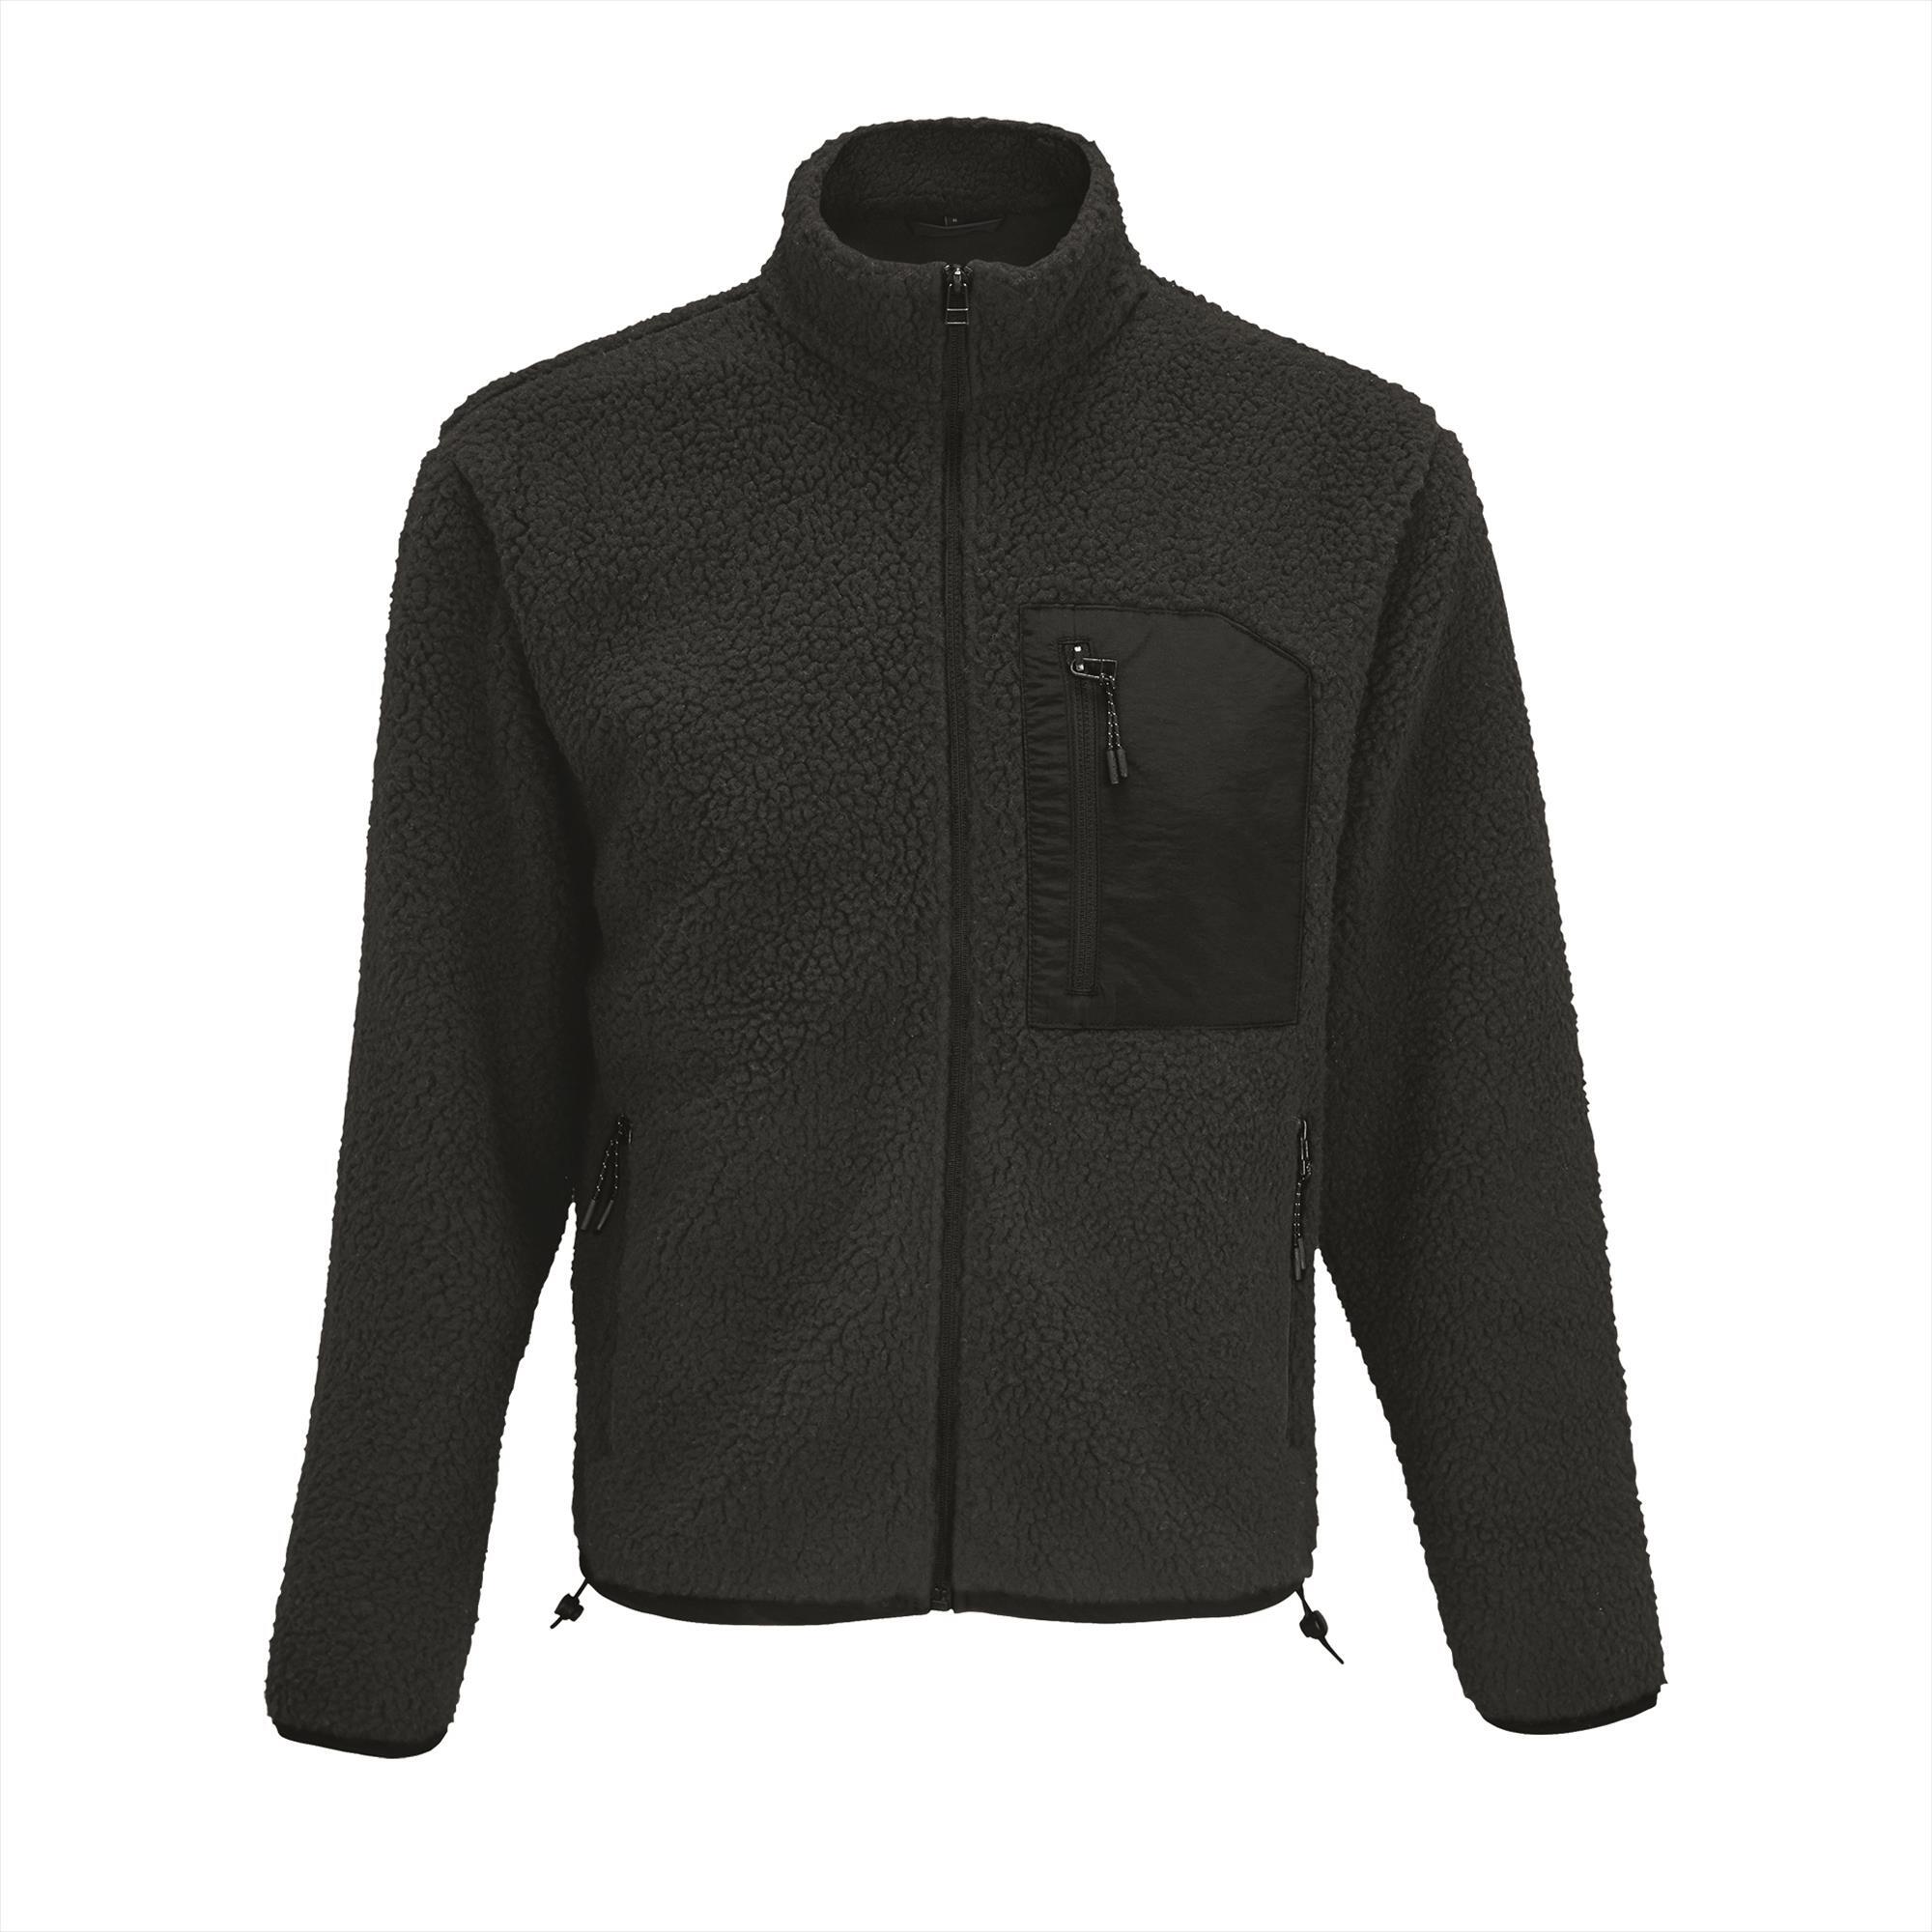 Unisex sherpa fleece jacket carbon grijs met zwart